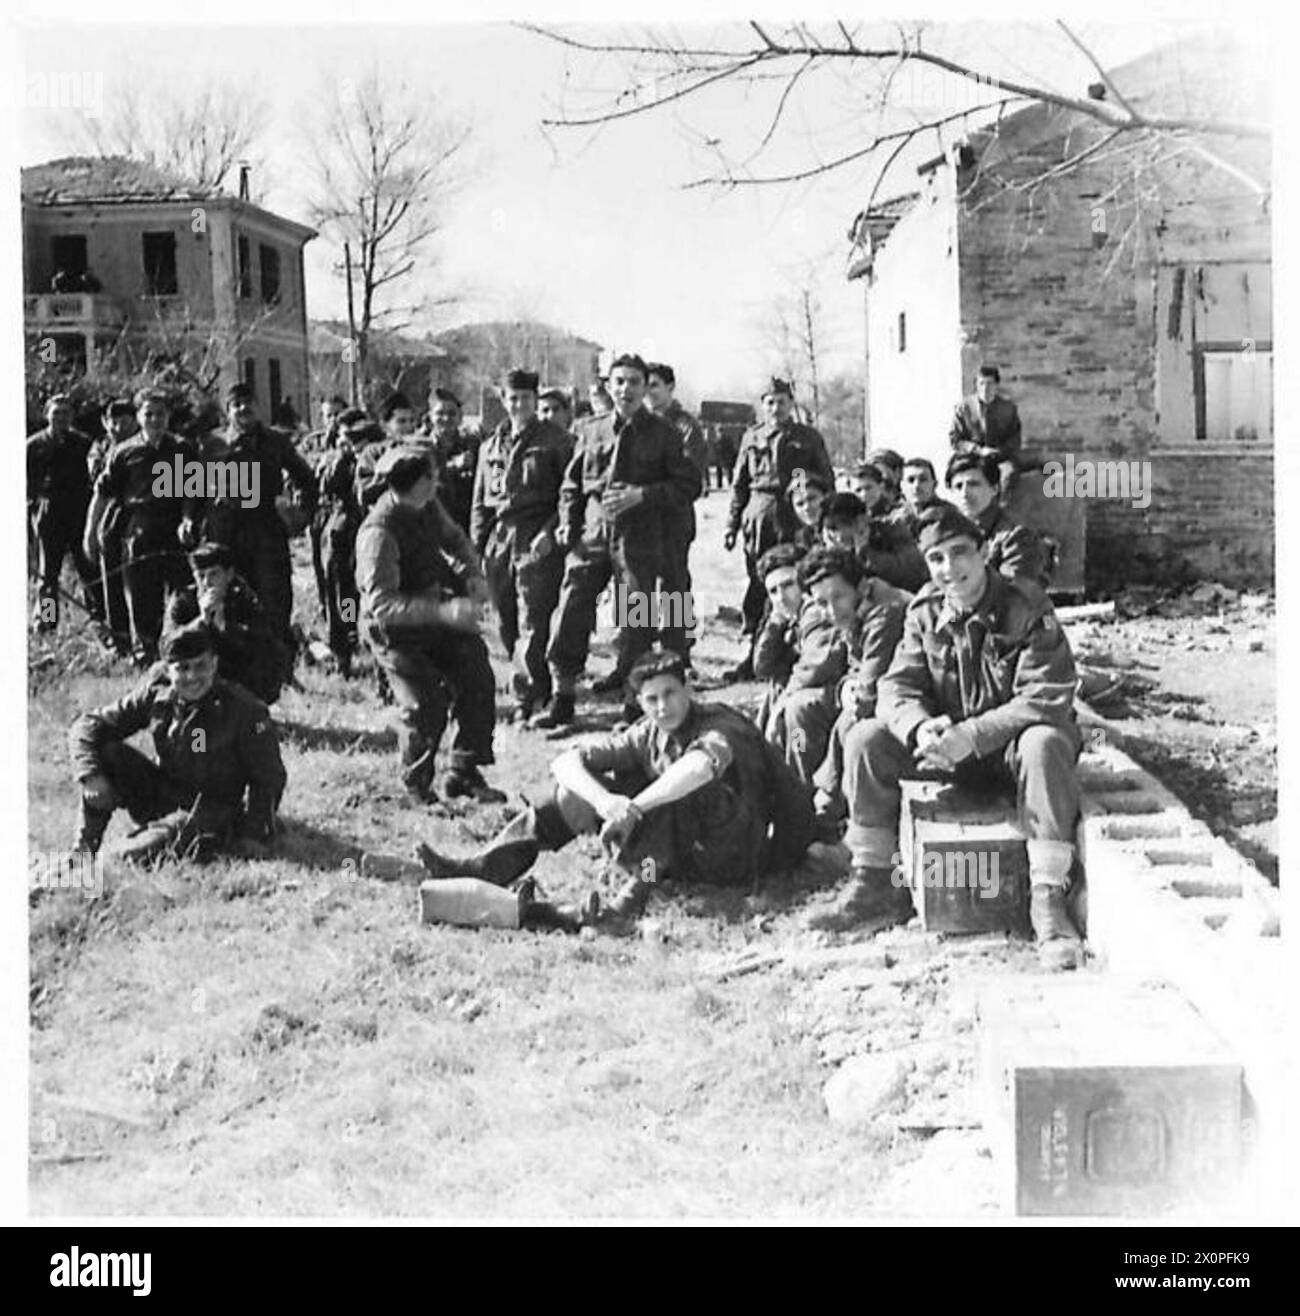 ACHTE ARMEE : VERSCHIEDENE italienische Soldaten beobachten die Geschütze in Aktion, um ihre Kameraden zu unterstützen. Fotografisches negativ, britische Armee Stockfoto